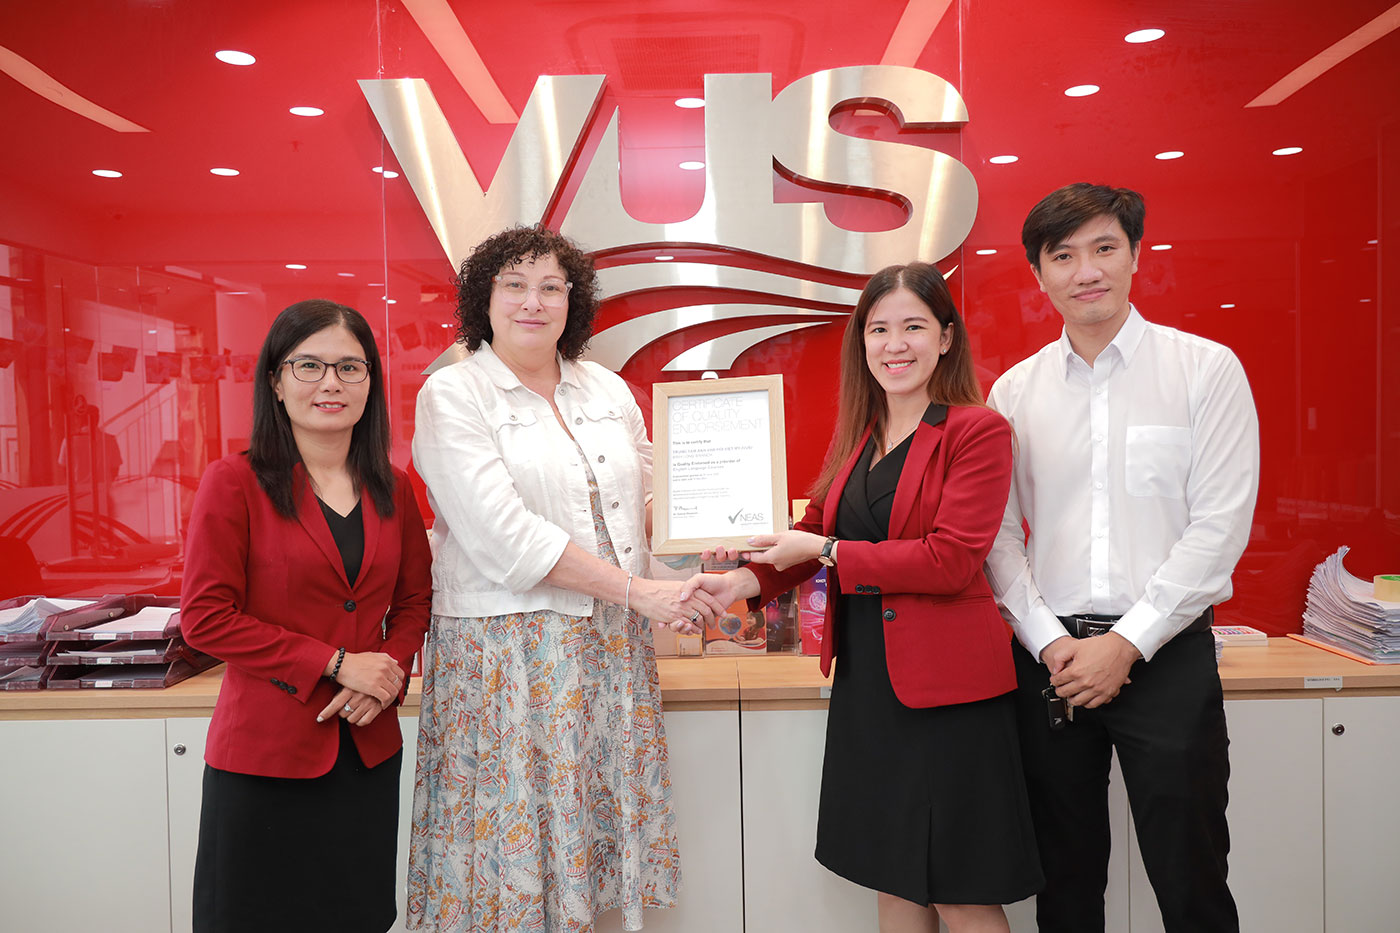 VUS được công nhận đạt chuẩn chất lượng quốc tế bởi NEAS năm thứ 5 liên tiếp - Ảnh 8